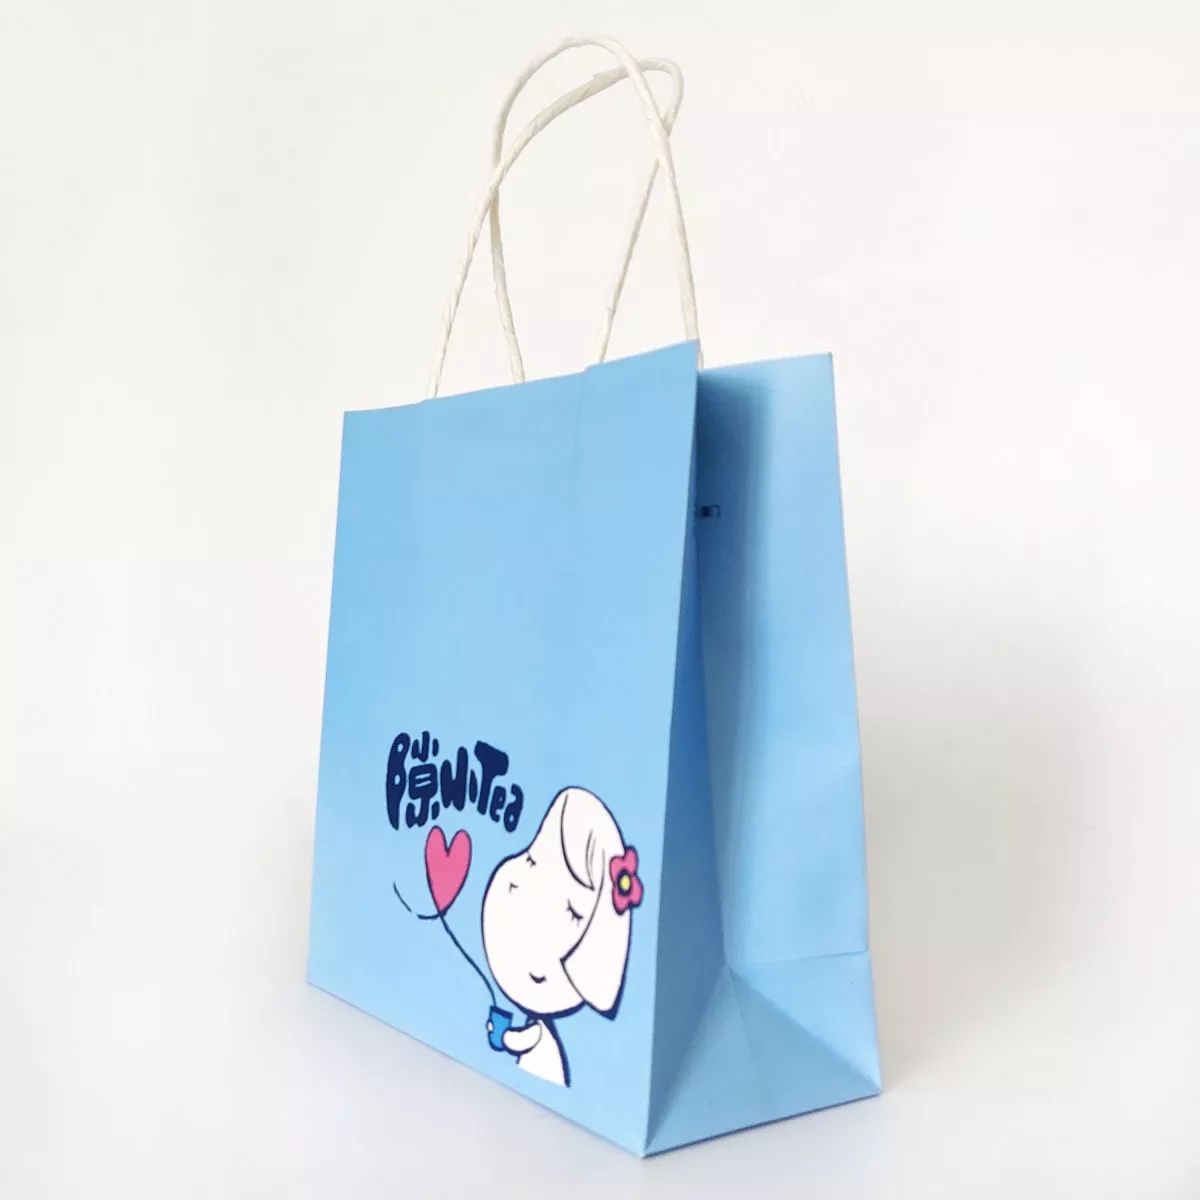 GB021 Cute Paper Shopping Bag for Tea